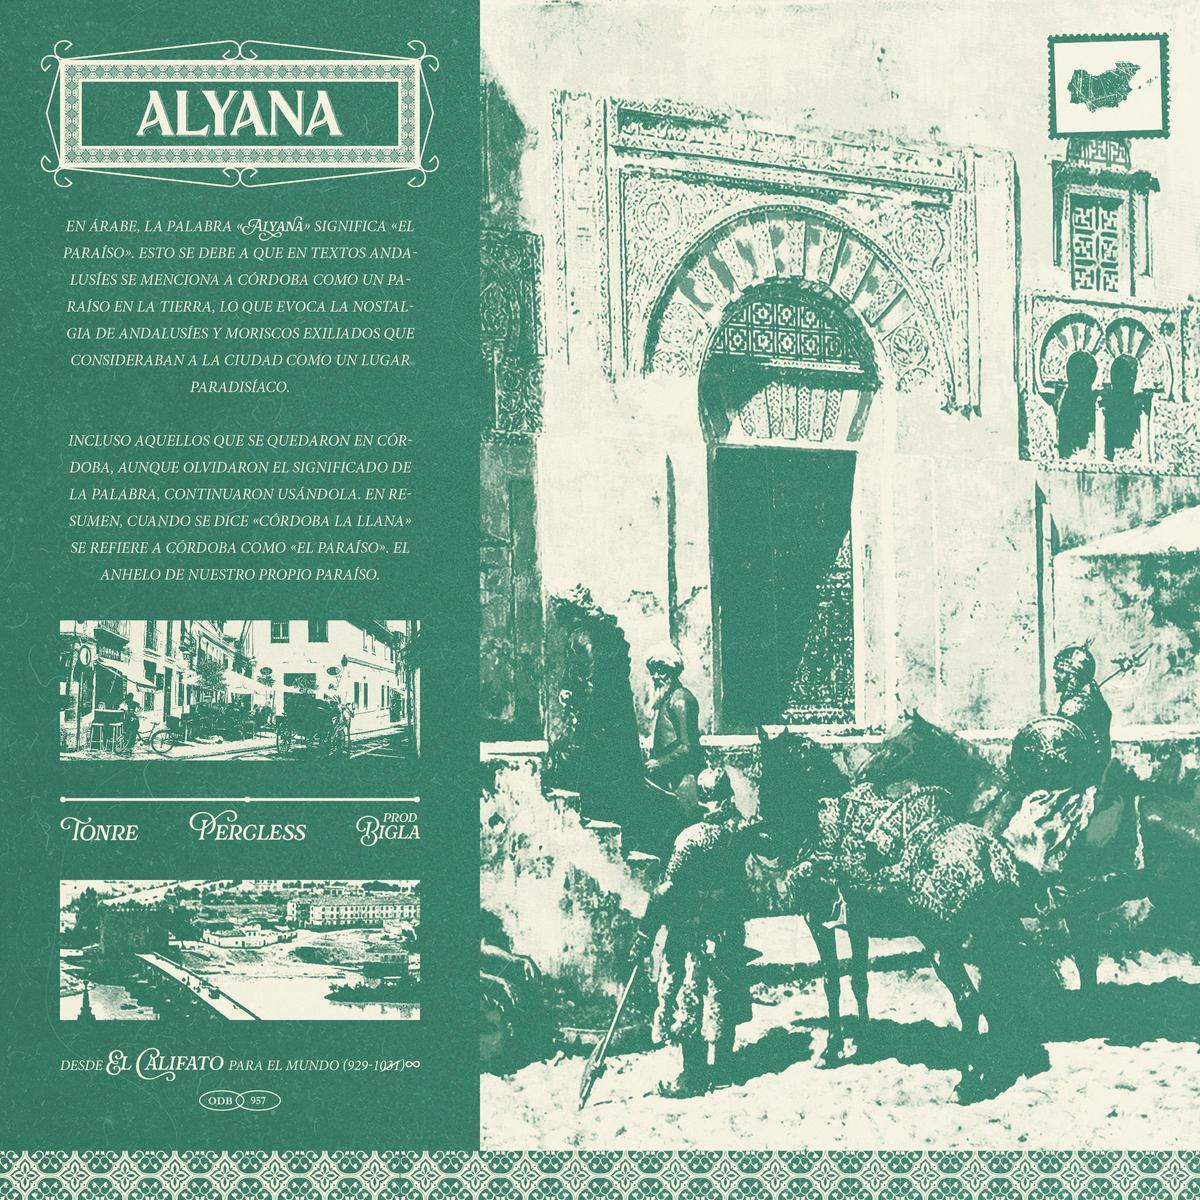 Porta de Alyana, el nuevo proyecto musical de El Califato.